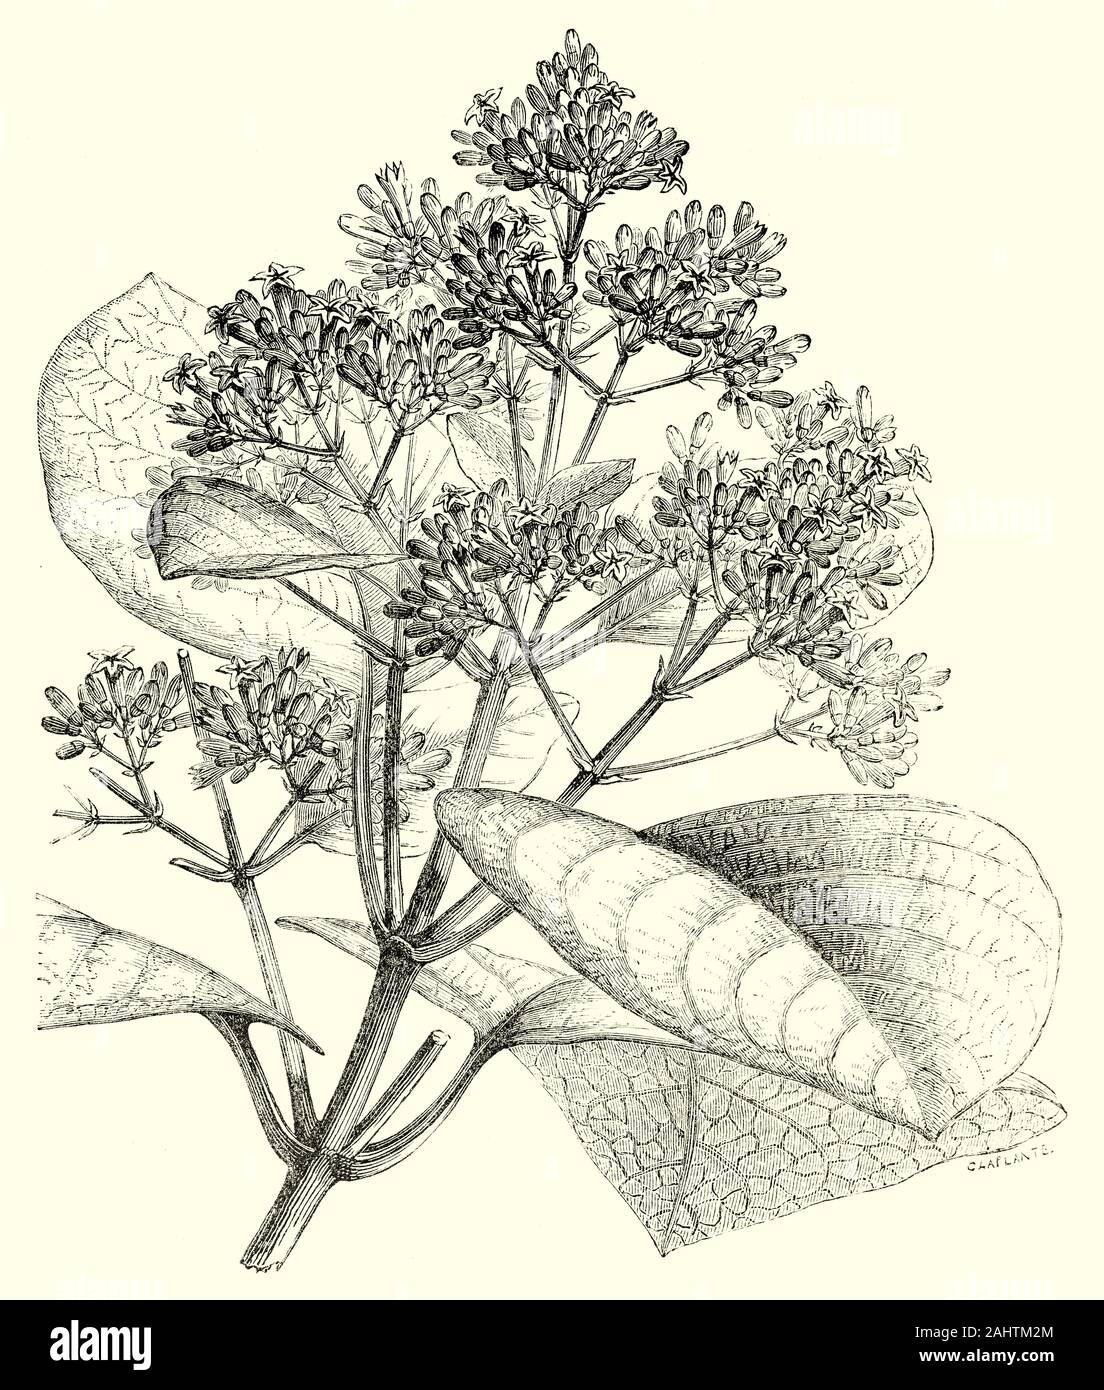 Les fleurs de Cinchona cordifolia, l'un d'un grand genre d'arbres de la région andine de l'Amérique du Sud ayant l'écorce médicinale connue pour sa haute teneur en quinine- et est utilisé dans la production de quinine, pour le traitement du paludisme. Banque D'Images